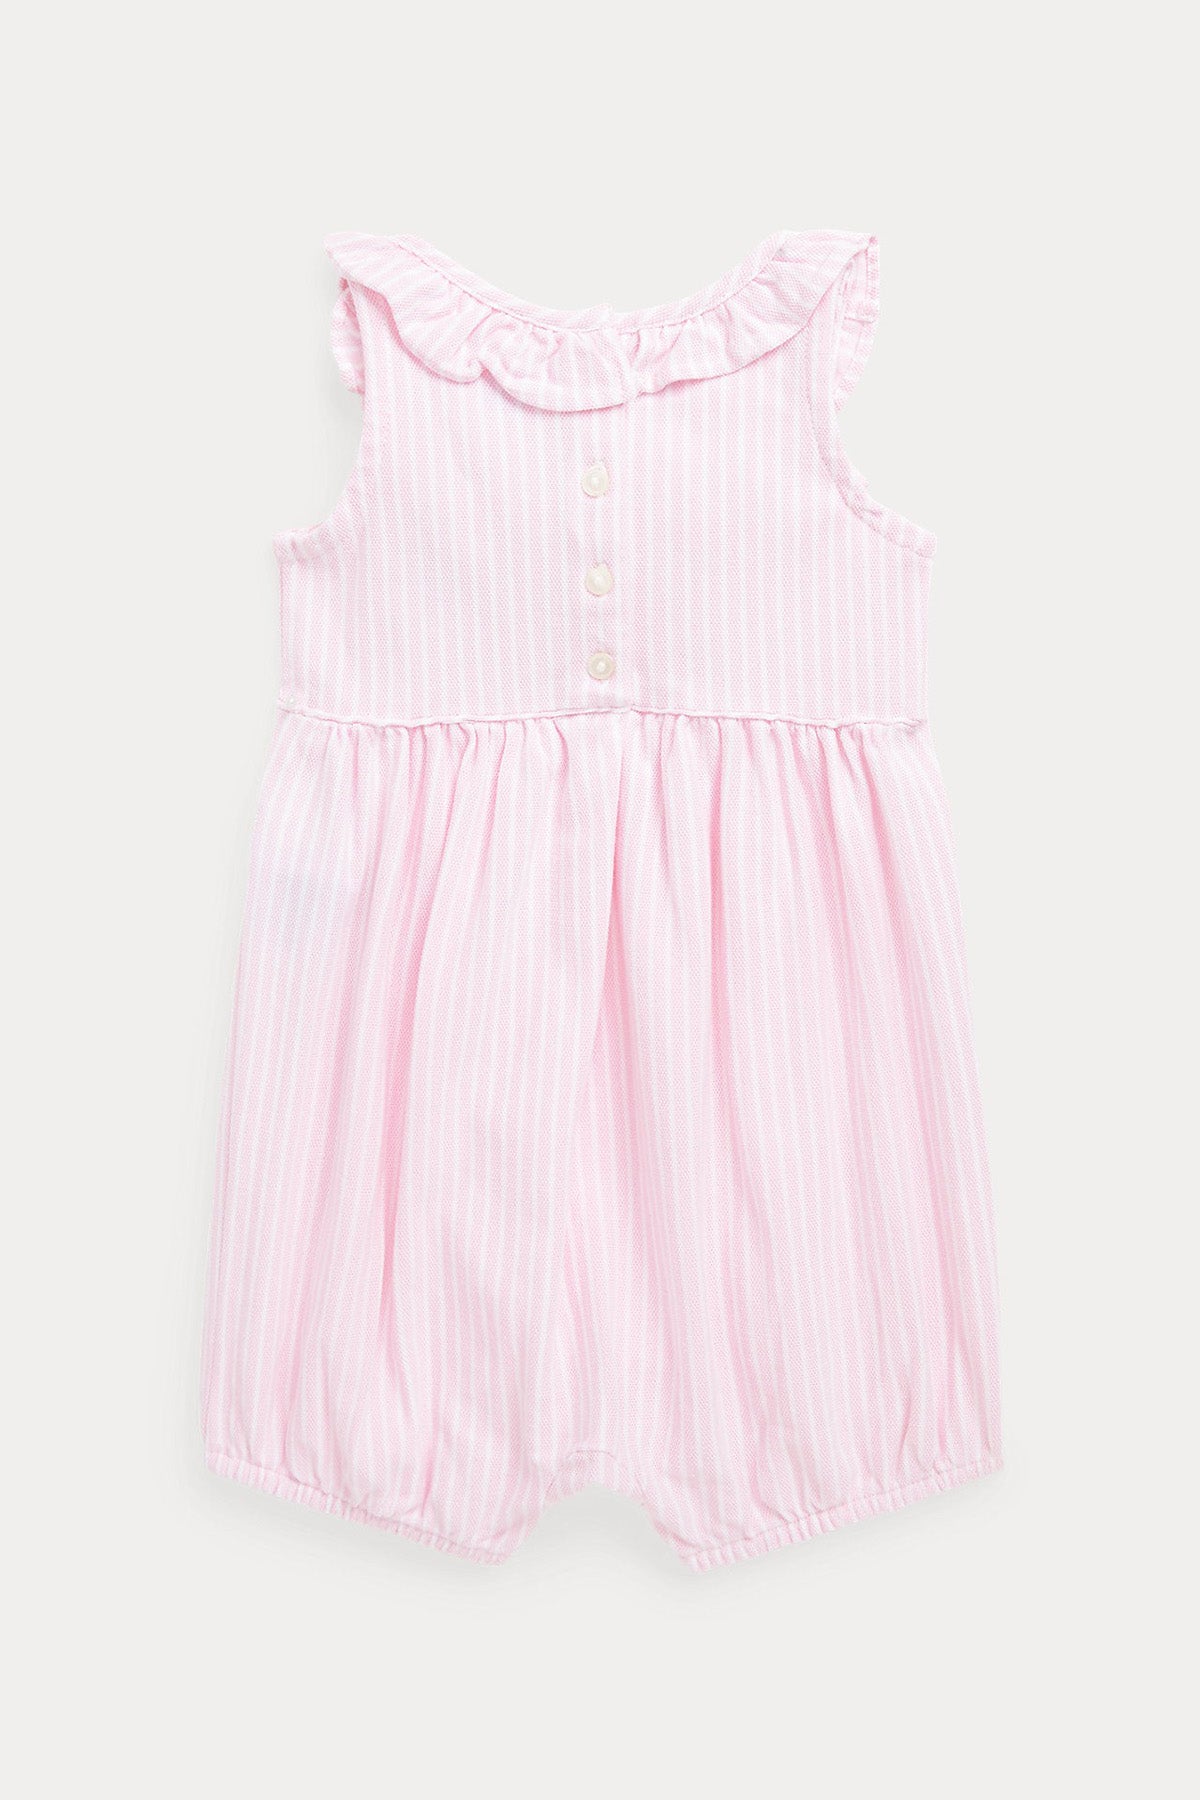 Polo Ralph Lauren Kids 3-9 Aylık Kız Bebek Çizgili Fırfırlı Tulum-Libas Trendy Fashion Store